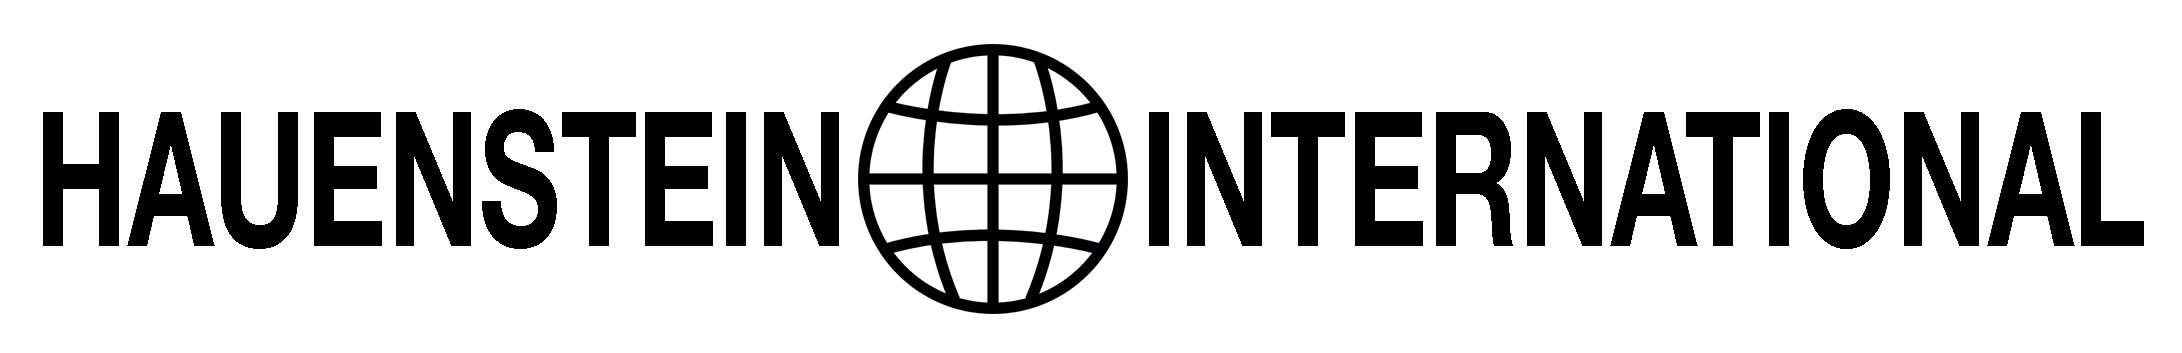 HINTL logo